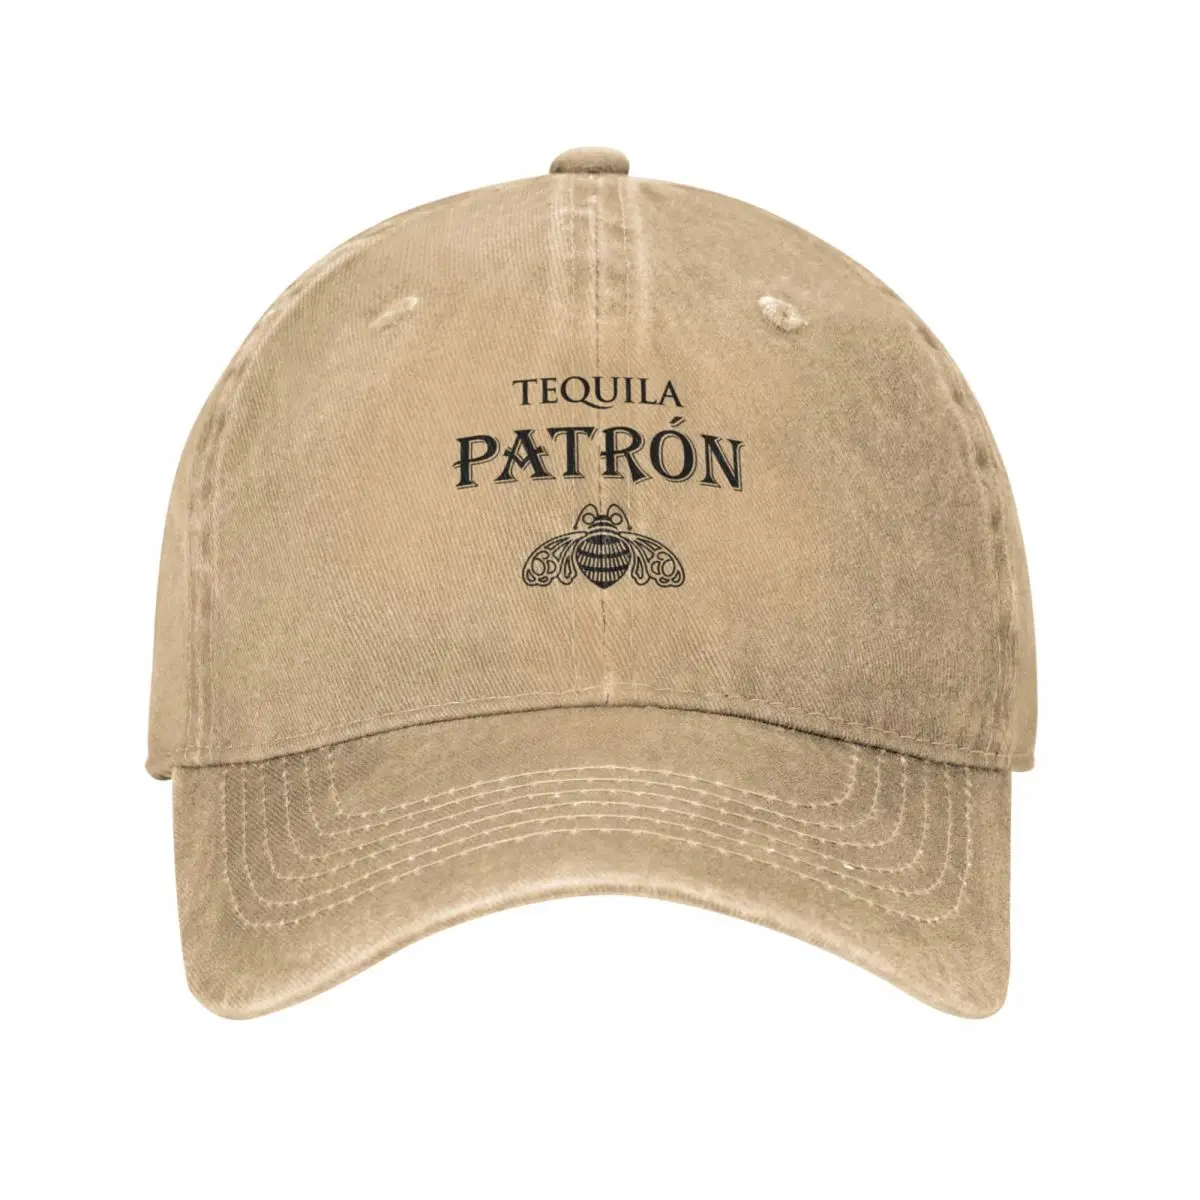 

Patron-Lovers Cap Cowboy Hat wild ball Hood Golf cap Snap back women's beach Men's